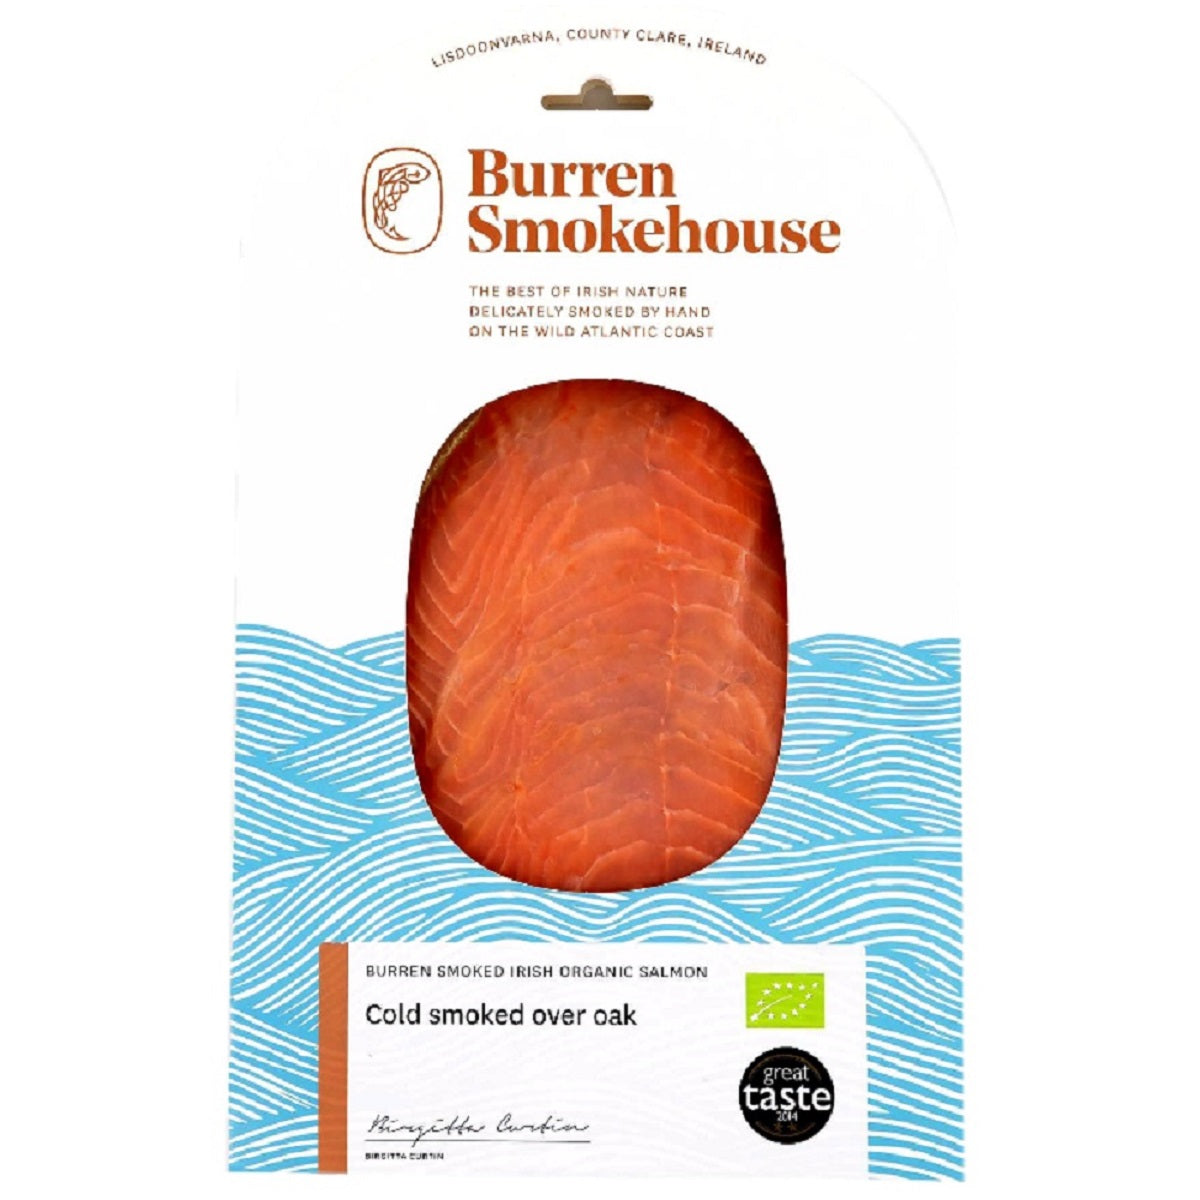 Burren Smokehouse Smoked Irish Organic Salmon 90g